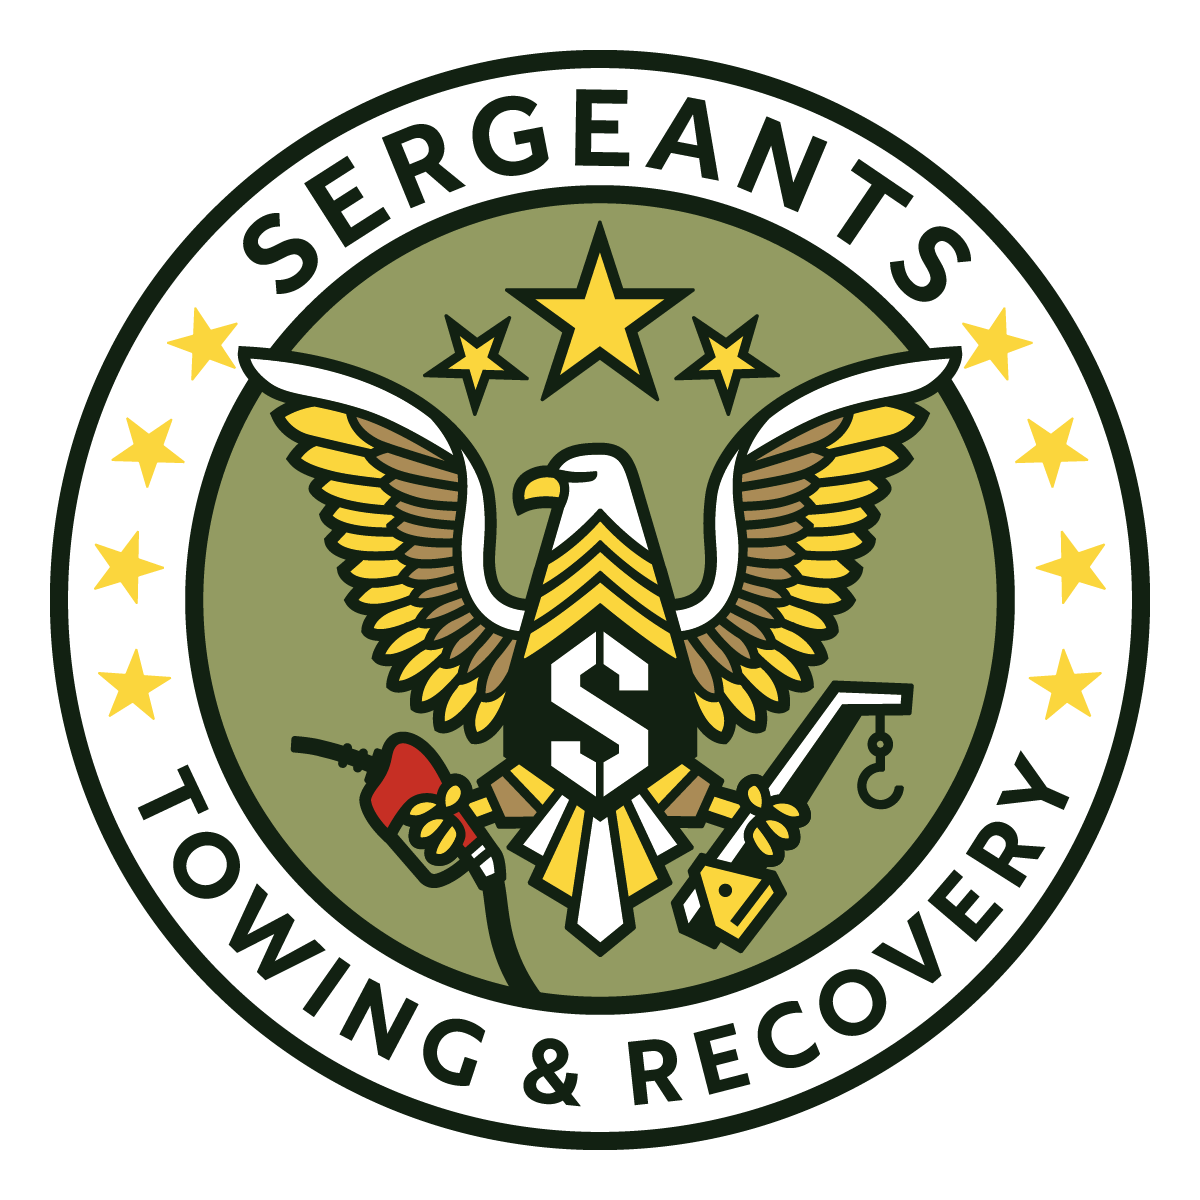 SERGEANTS-seal-T&R-green